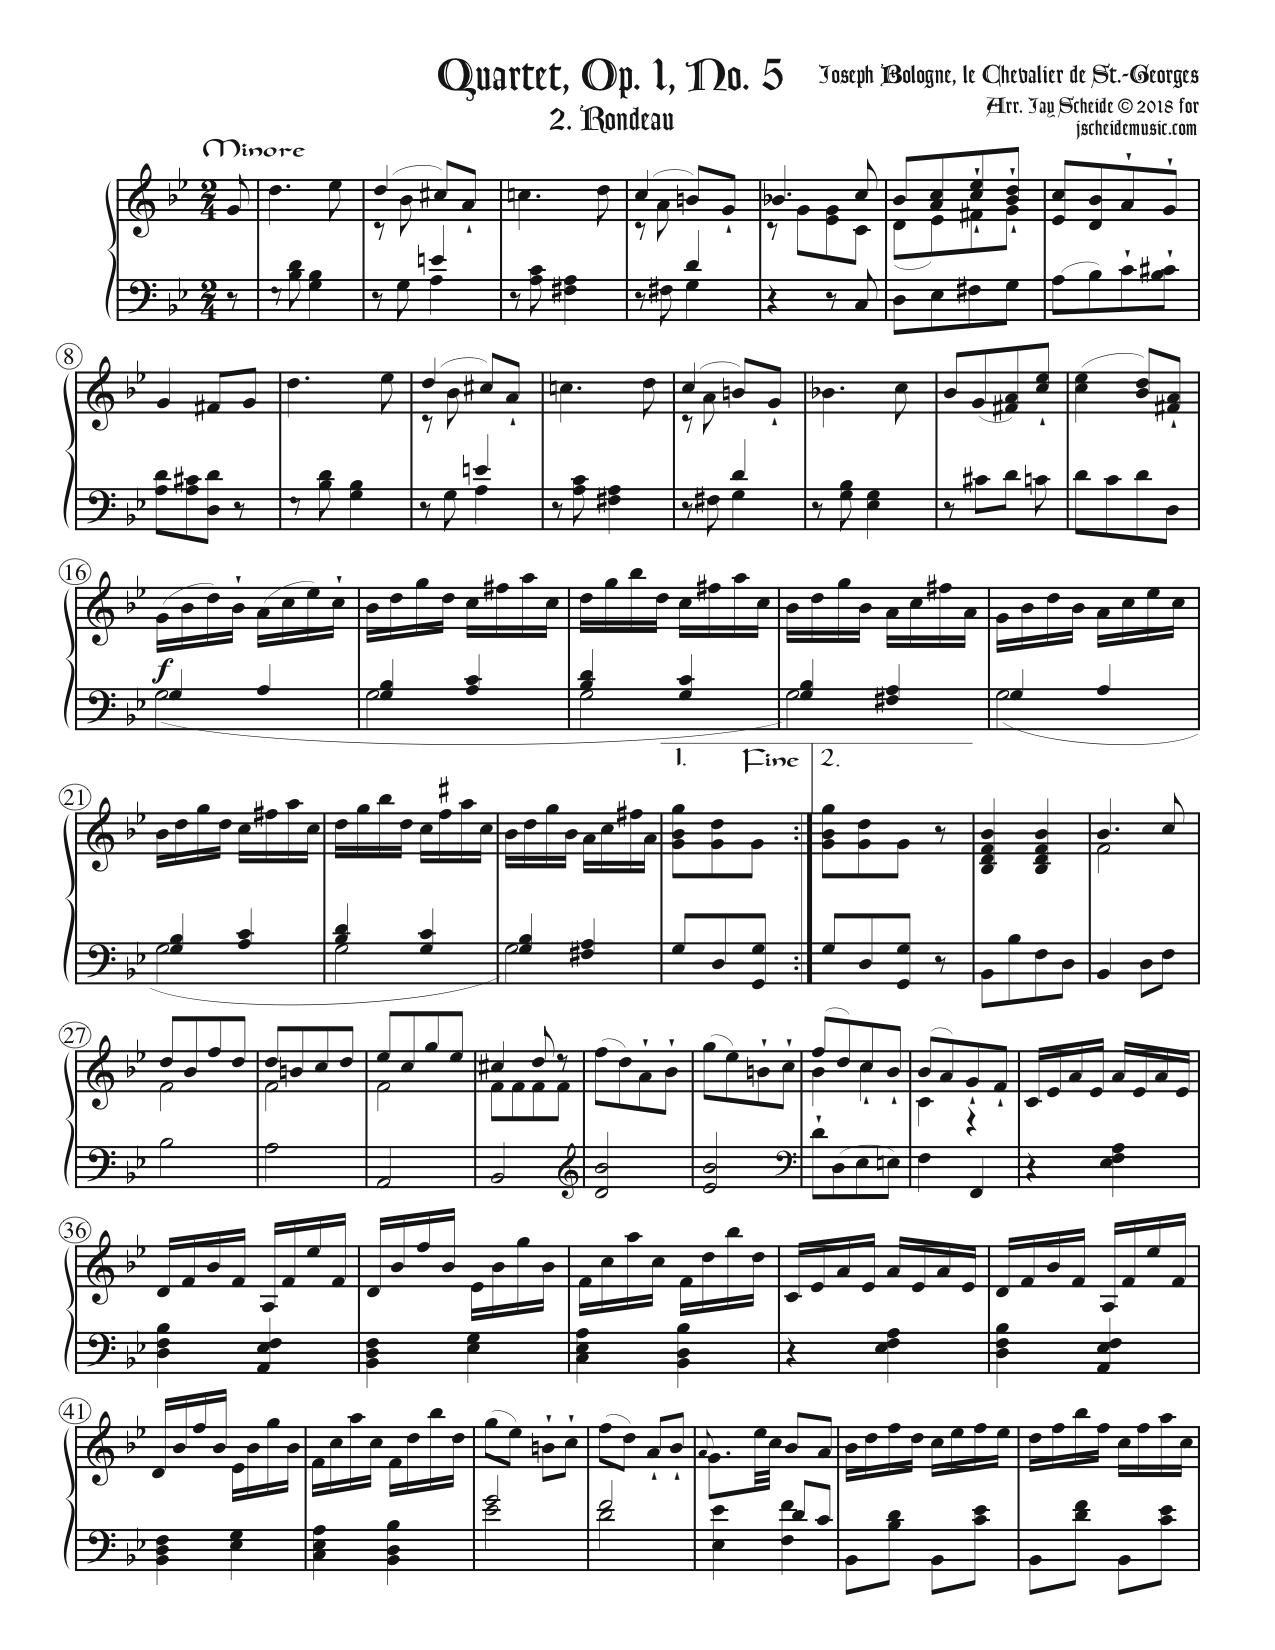 Rondeau from Quartet Op. 1, No 5